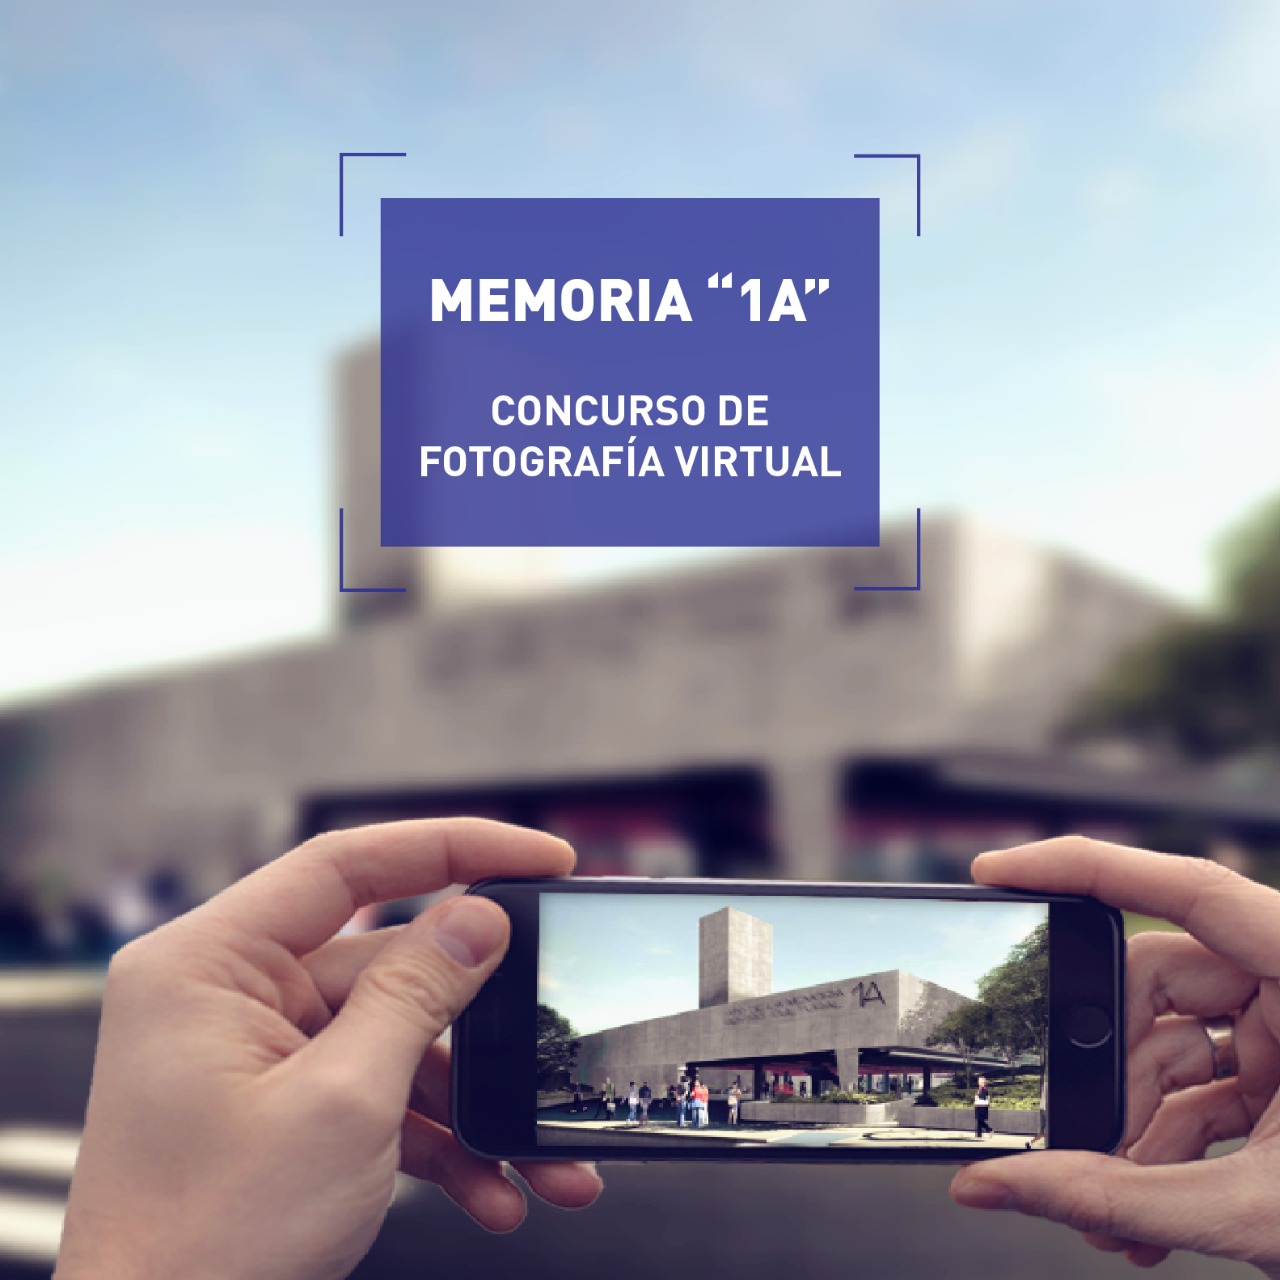 Hasta el 8 de agosto sigue abierto el Concurso de fotografía virtual Memoria 1-A imagen